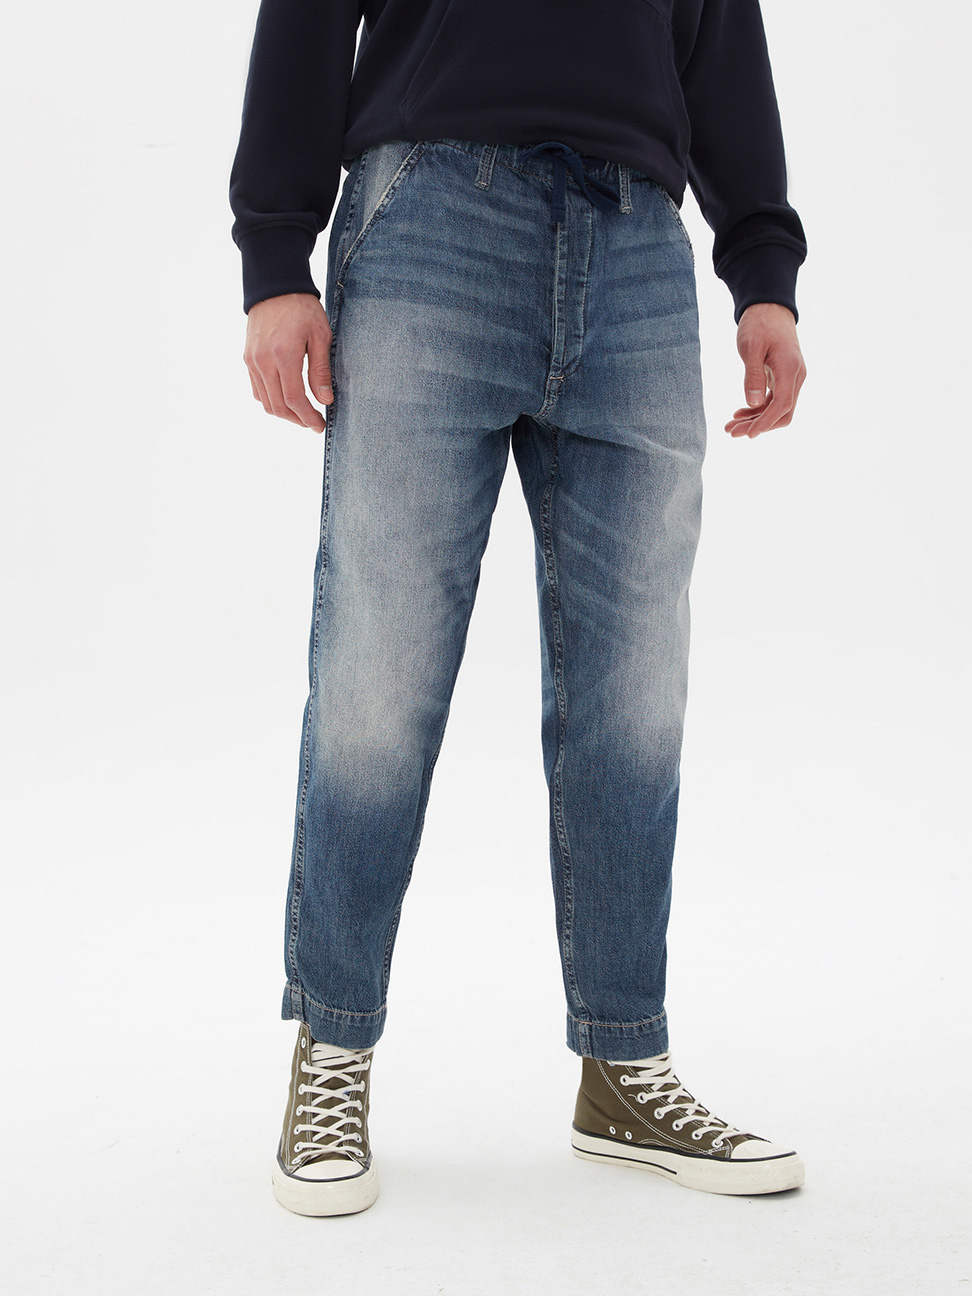 男裝|款棉質水洗鬆緊牛仔褲 1969復古經典系列-復古中度靛藍